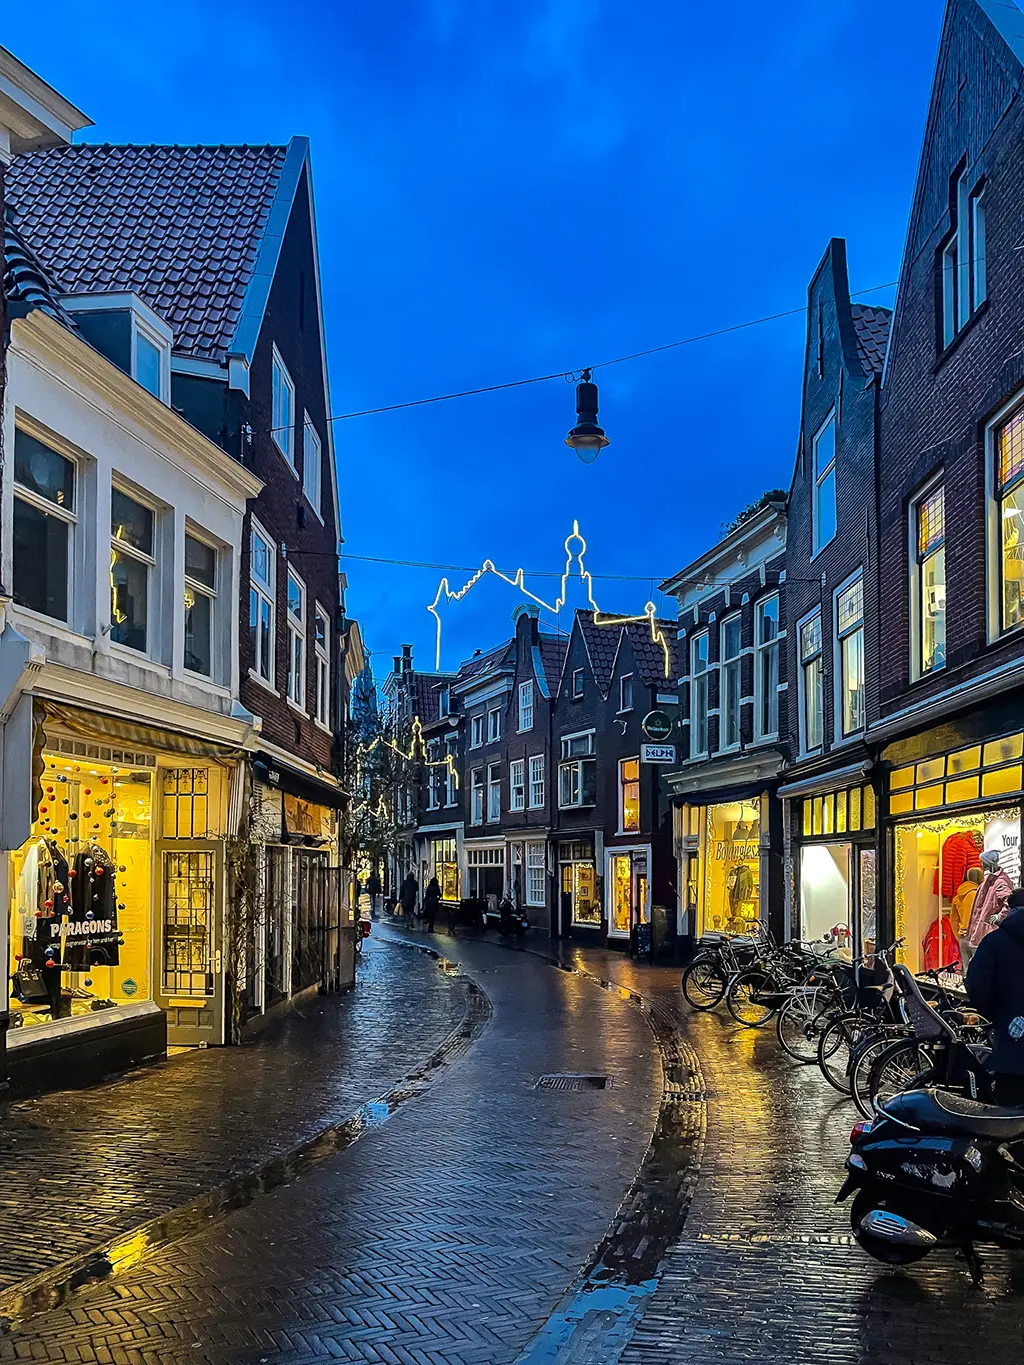 Que faire à Haarlem aux Pays-Bas ? Nos bons plans pour un city trip réussi en Hollande, juste à côté d'Amsterdam.